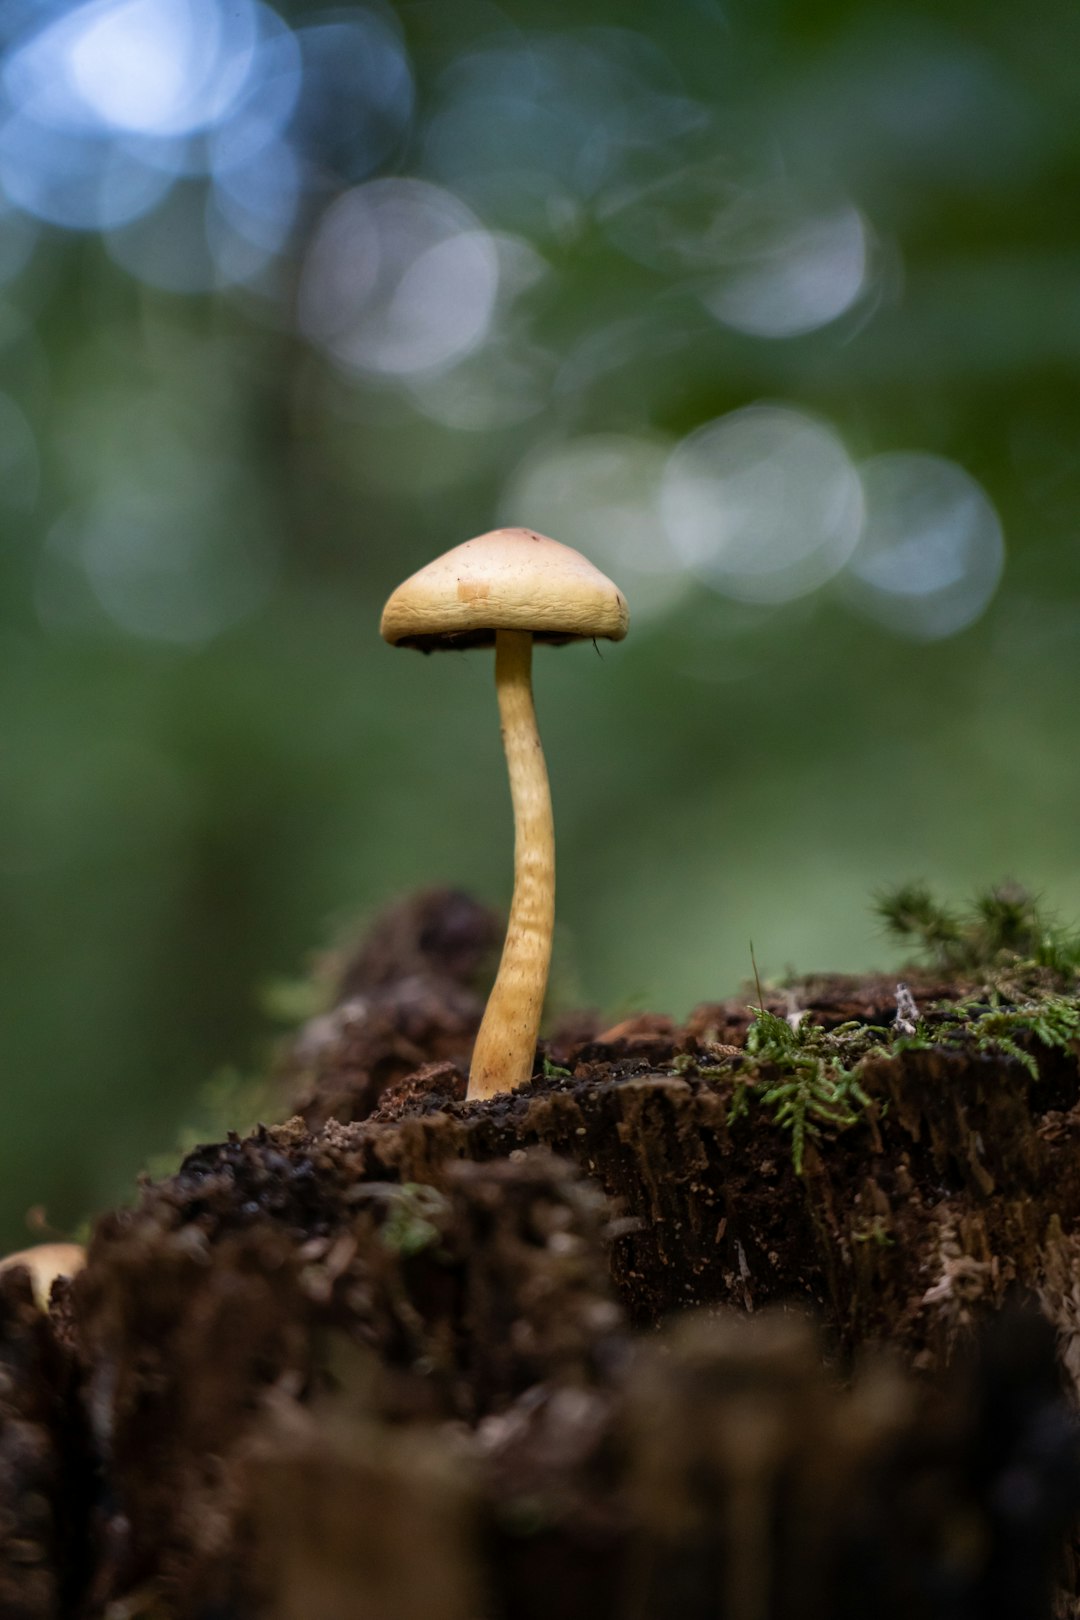 mushrooms omelette, mushroom, a close up of a mushroom on a tree stump